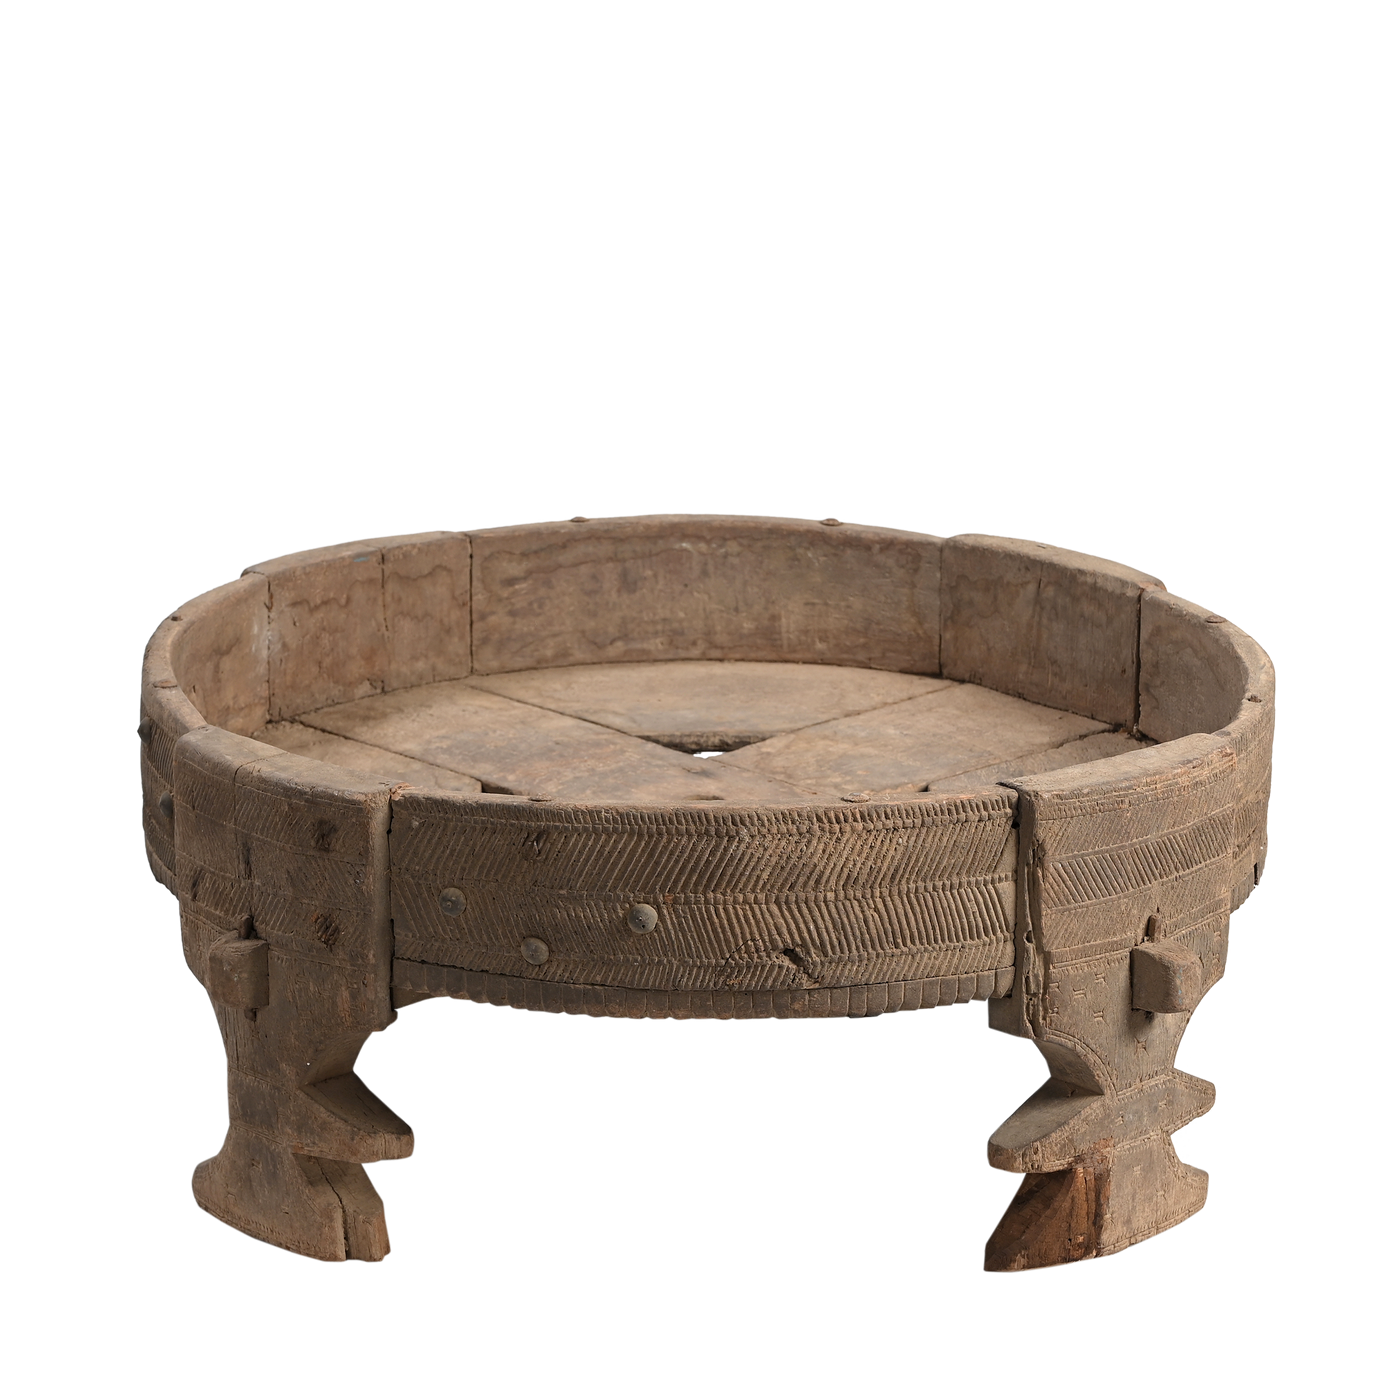 Chakki - Old coffee table n ° 33